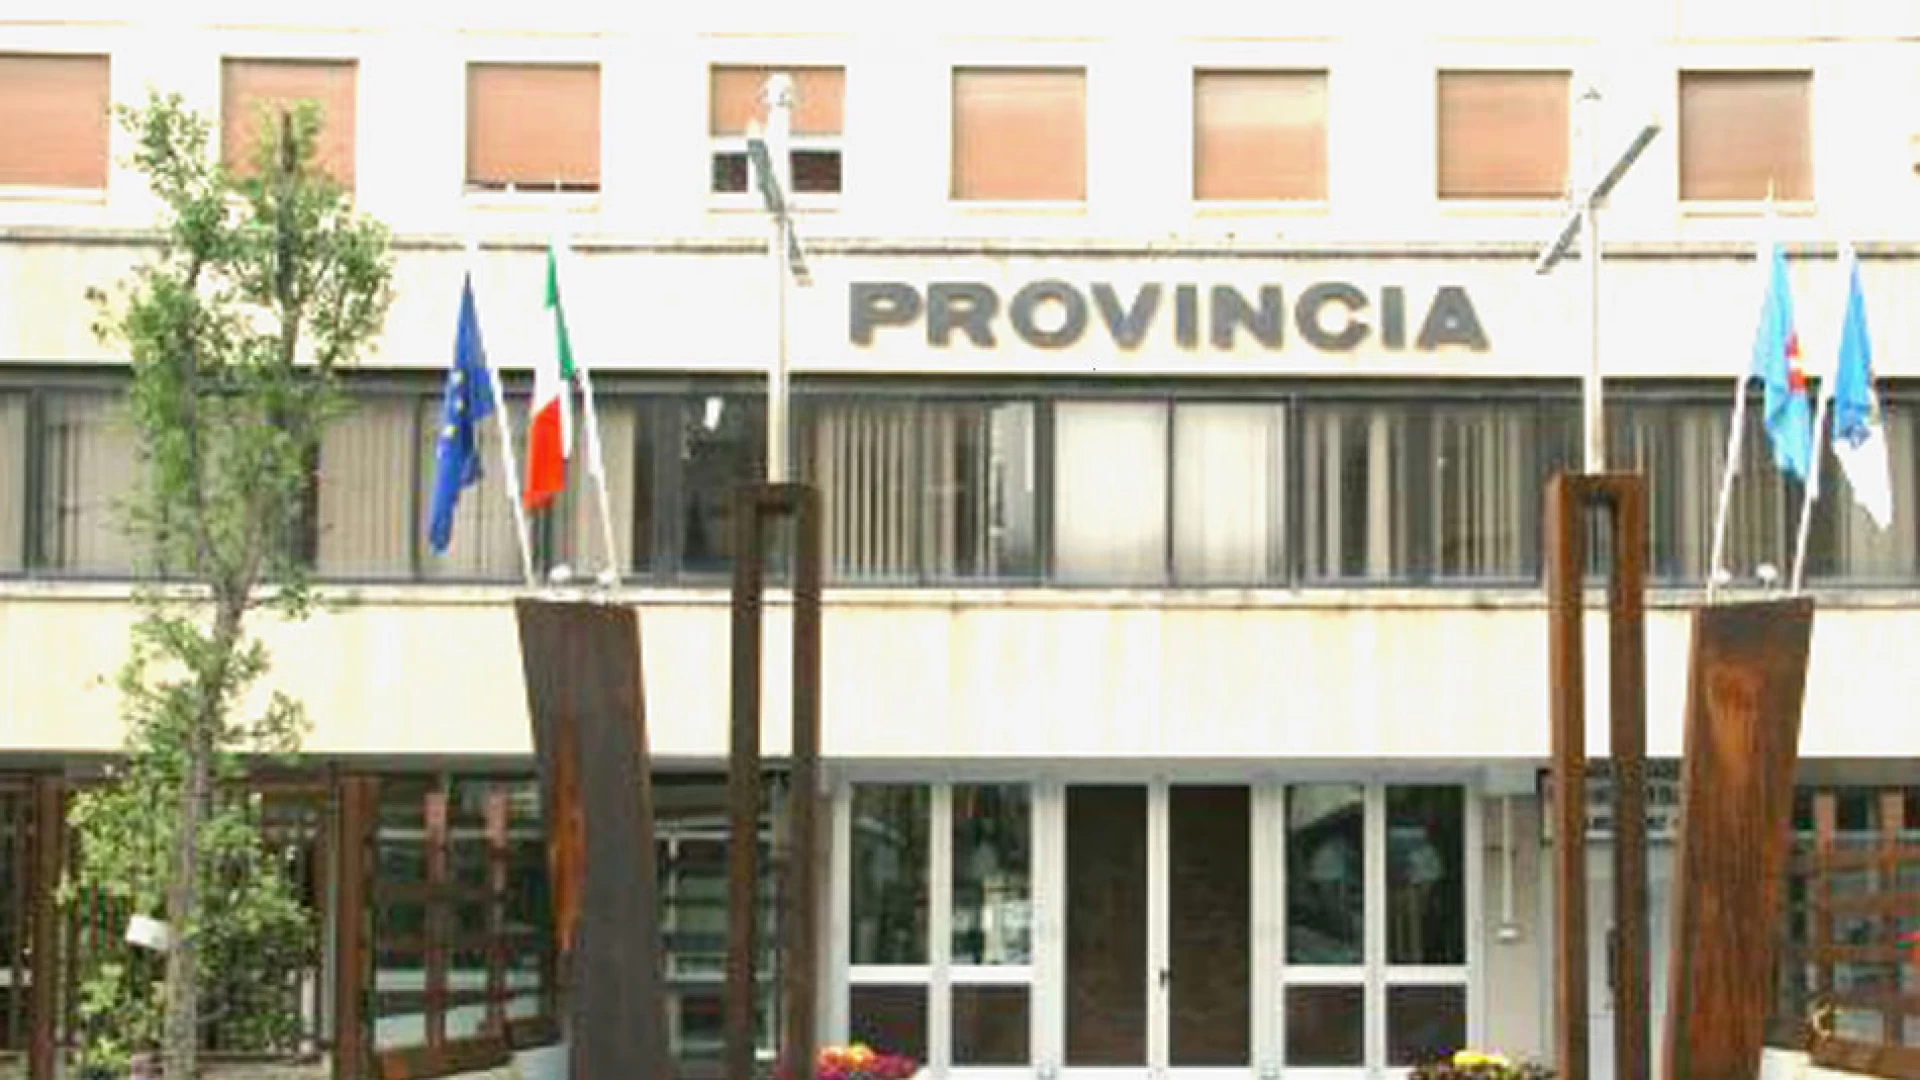 Isernia: 40 Provincie in squilibrio per tagli di legge. Per l’Upi sono compromessi i servizi di chi vive nella provincia italiana.